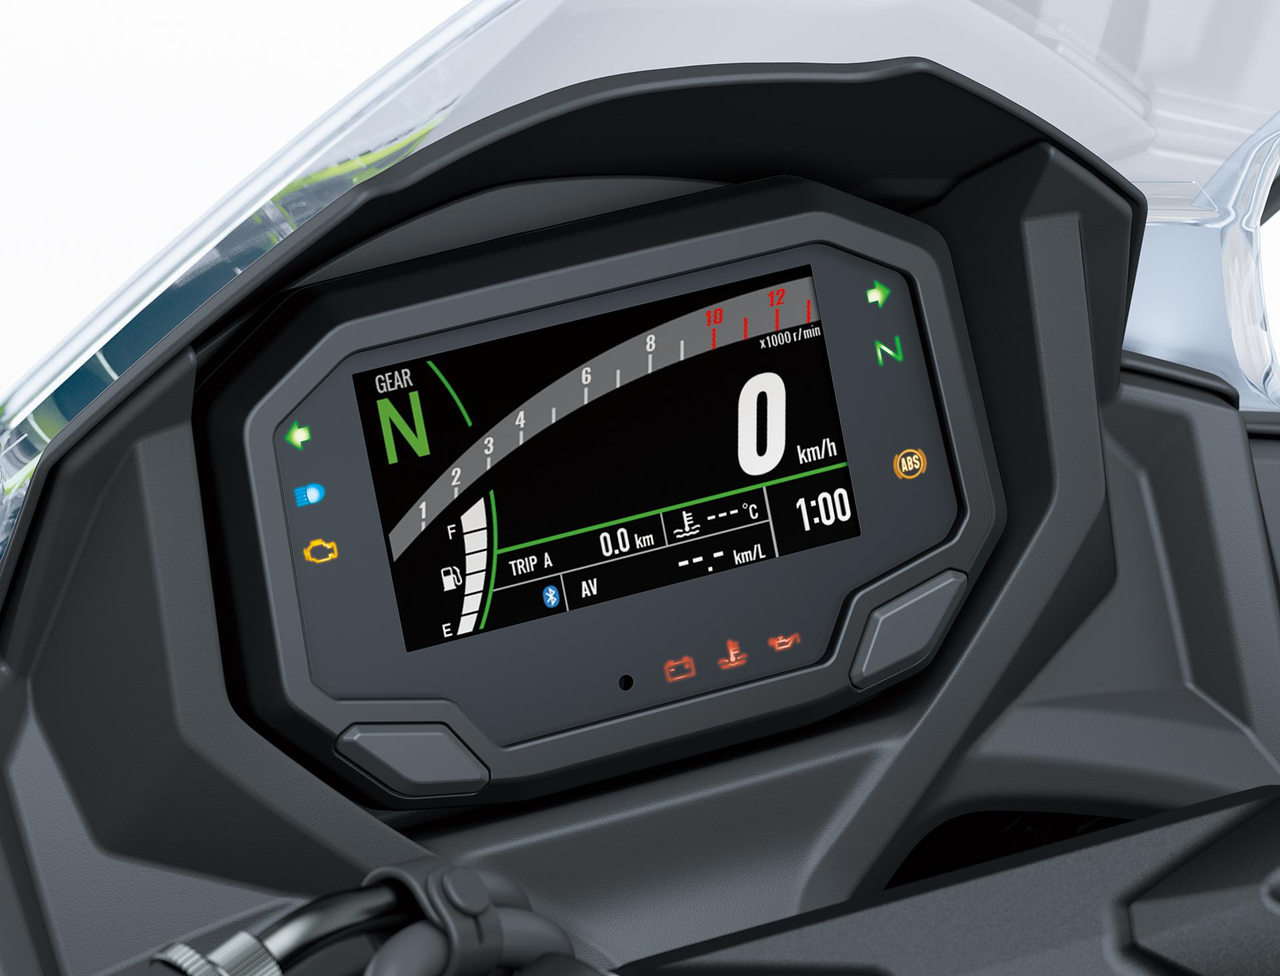 KTRC (Kawasaki Traction Control)